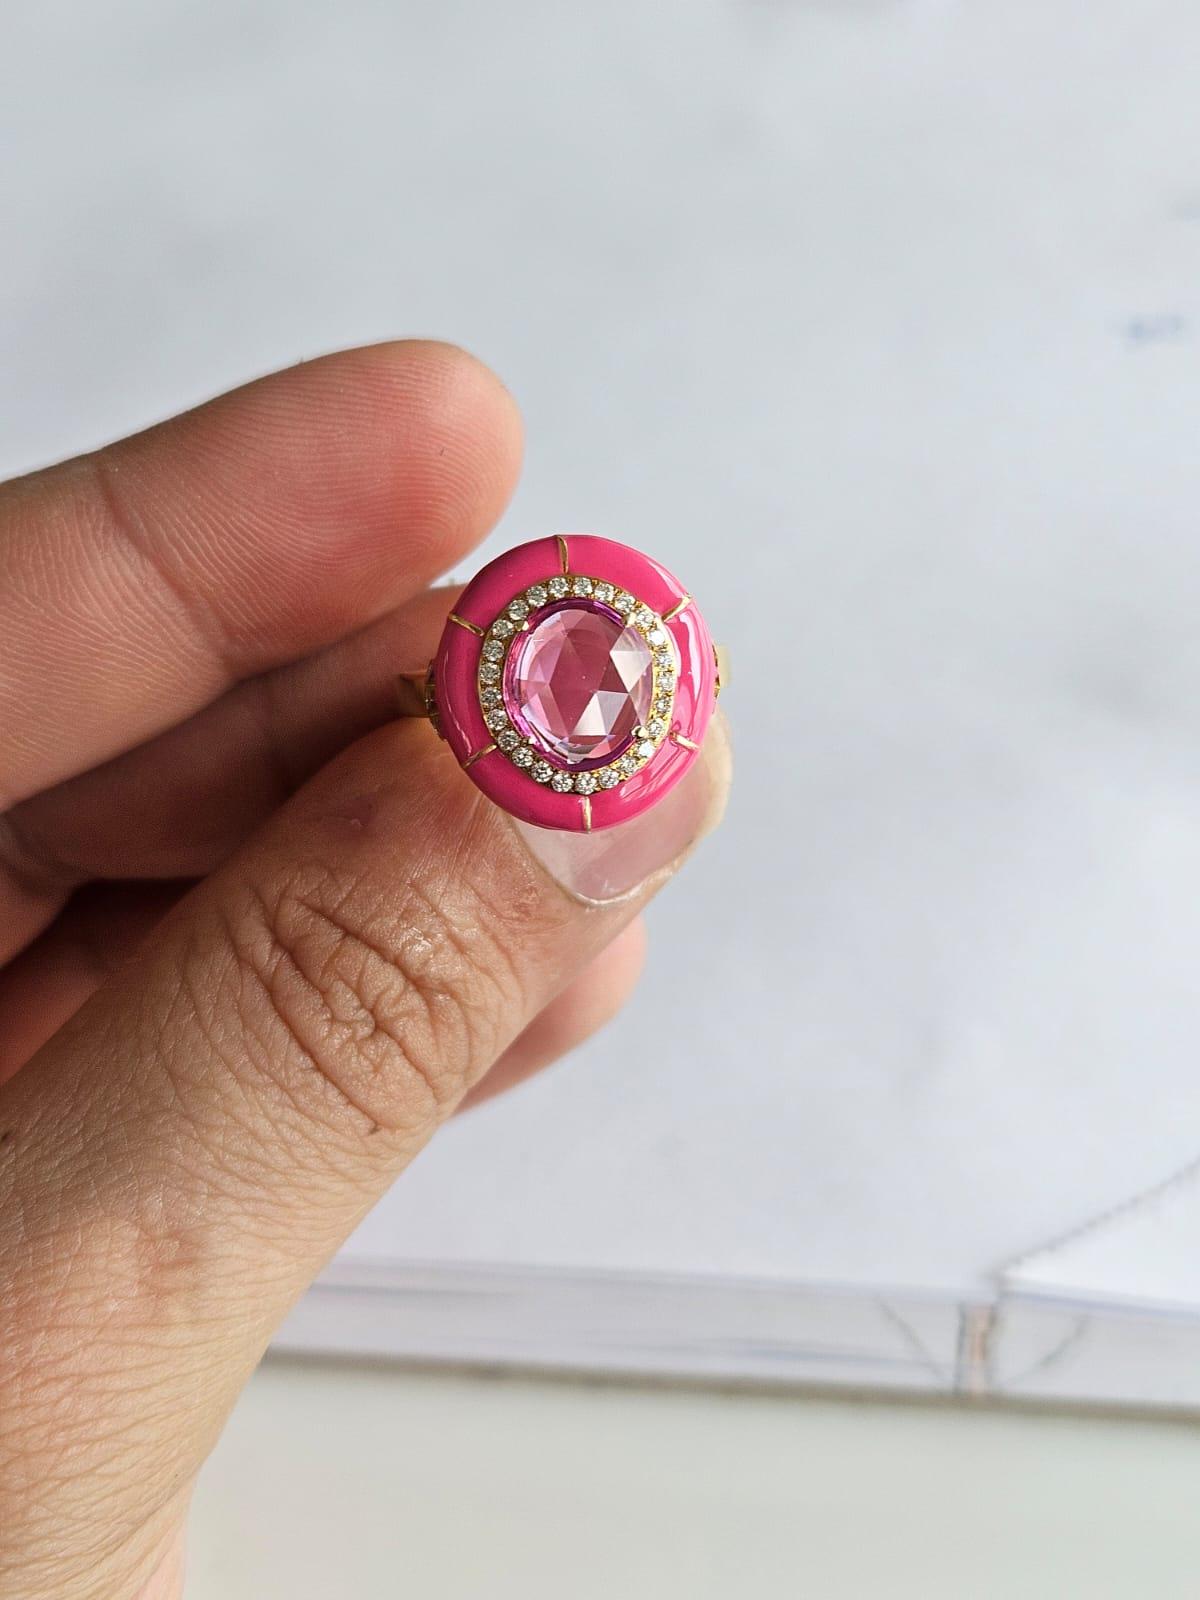 Bague de fiançailles en or jaune 18 carats et diamants avec saphir rose, de style moderne. Le poids du saphir rose taille rose est de 1.75 carats. Le saphir rose est originaire de Ceylan (Sri Lanka). Le poids des diamants est de 0,19 carats. Le